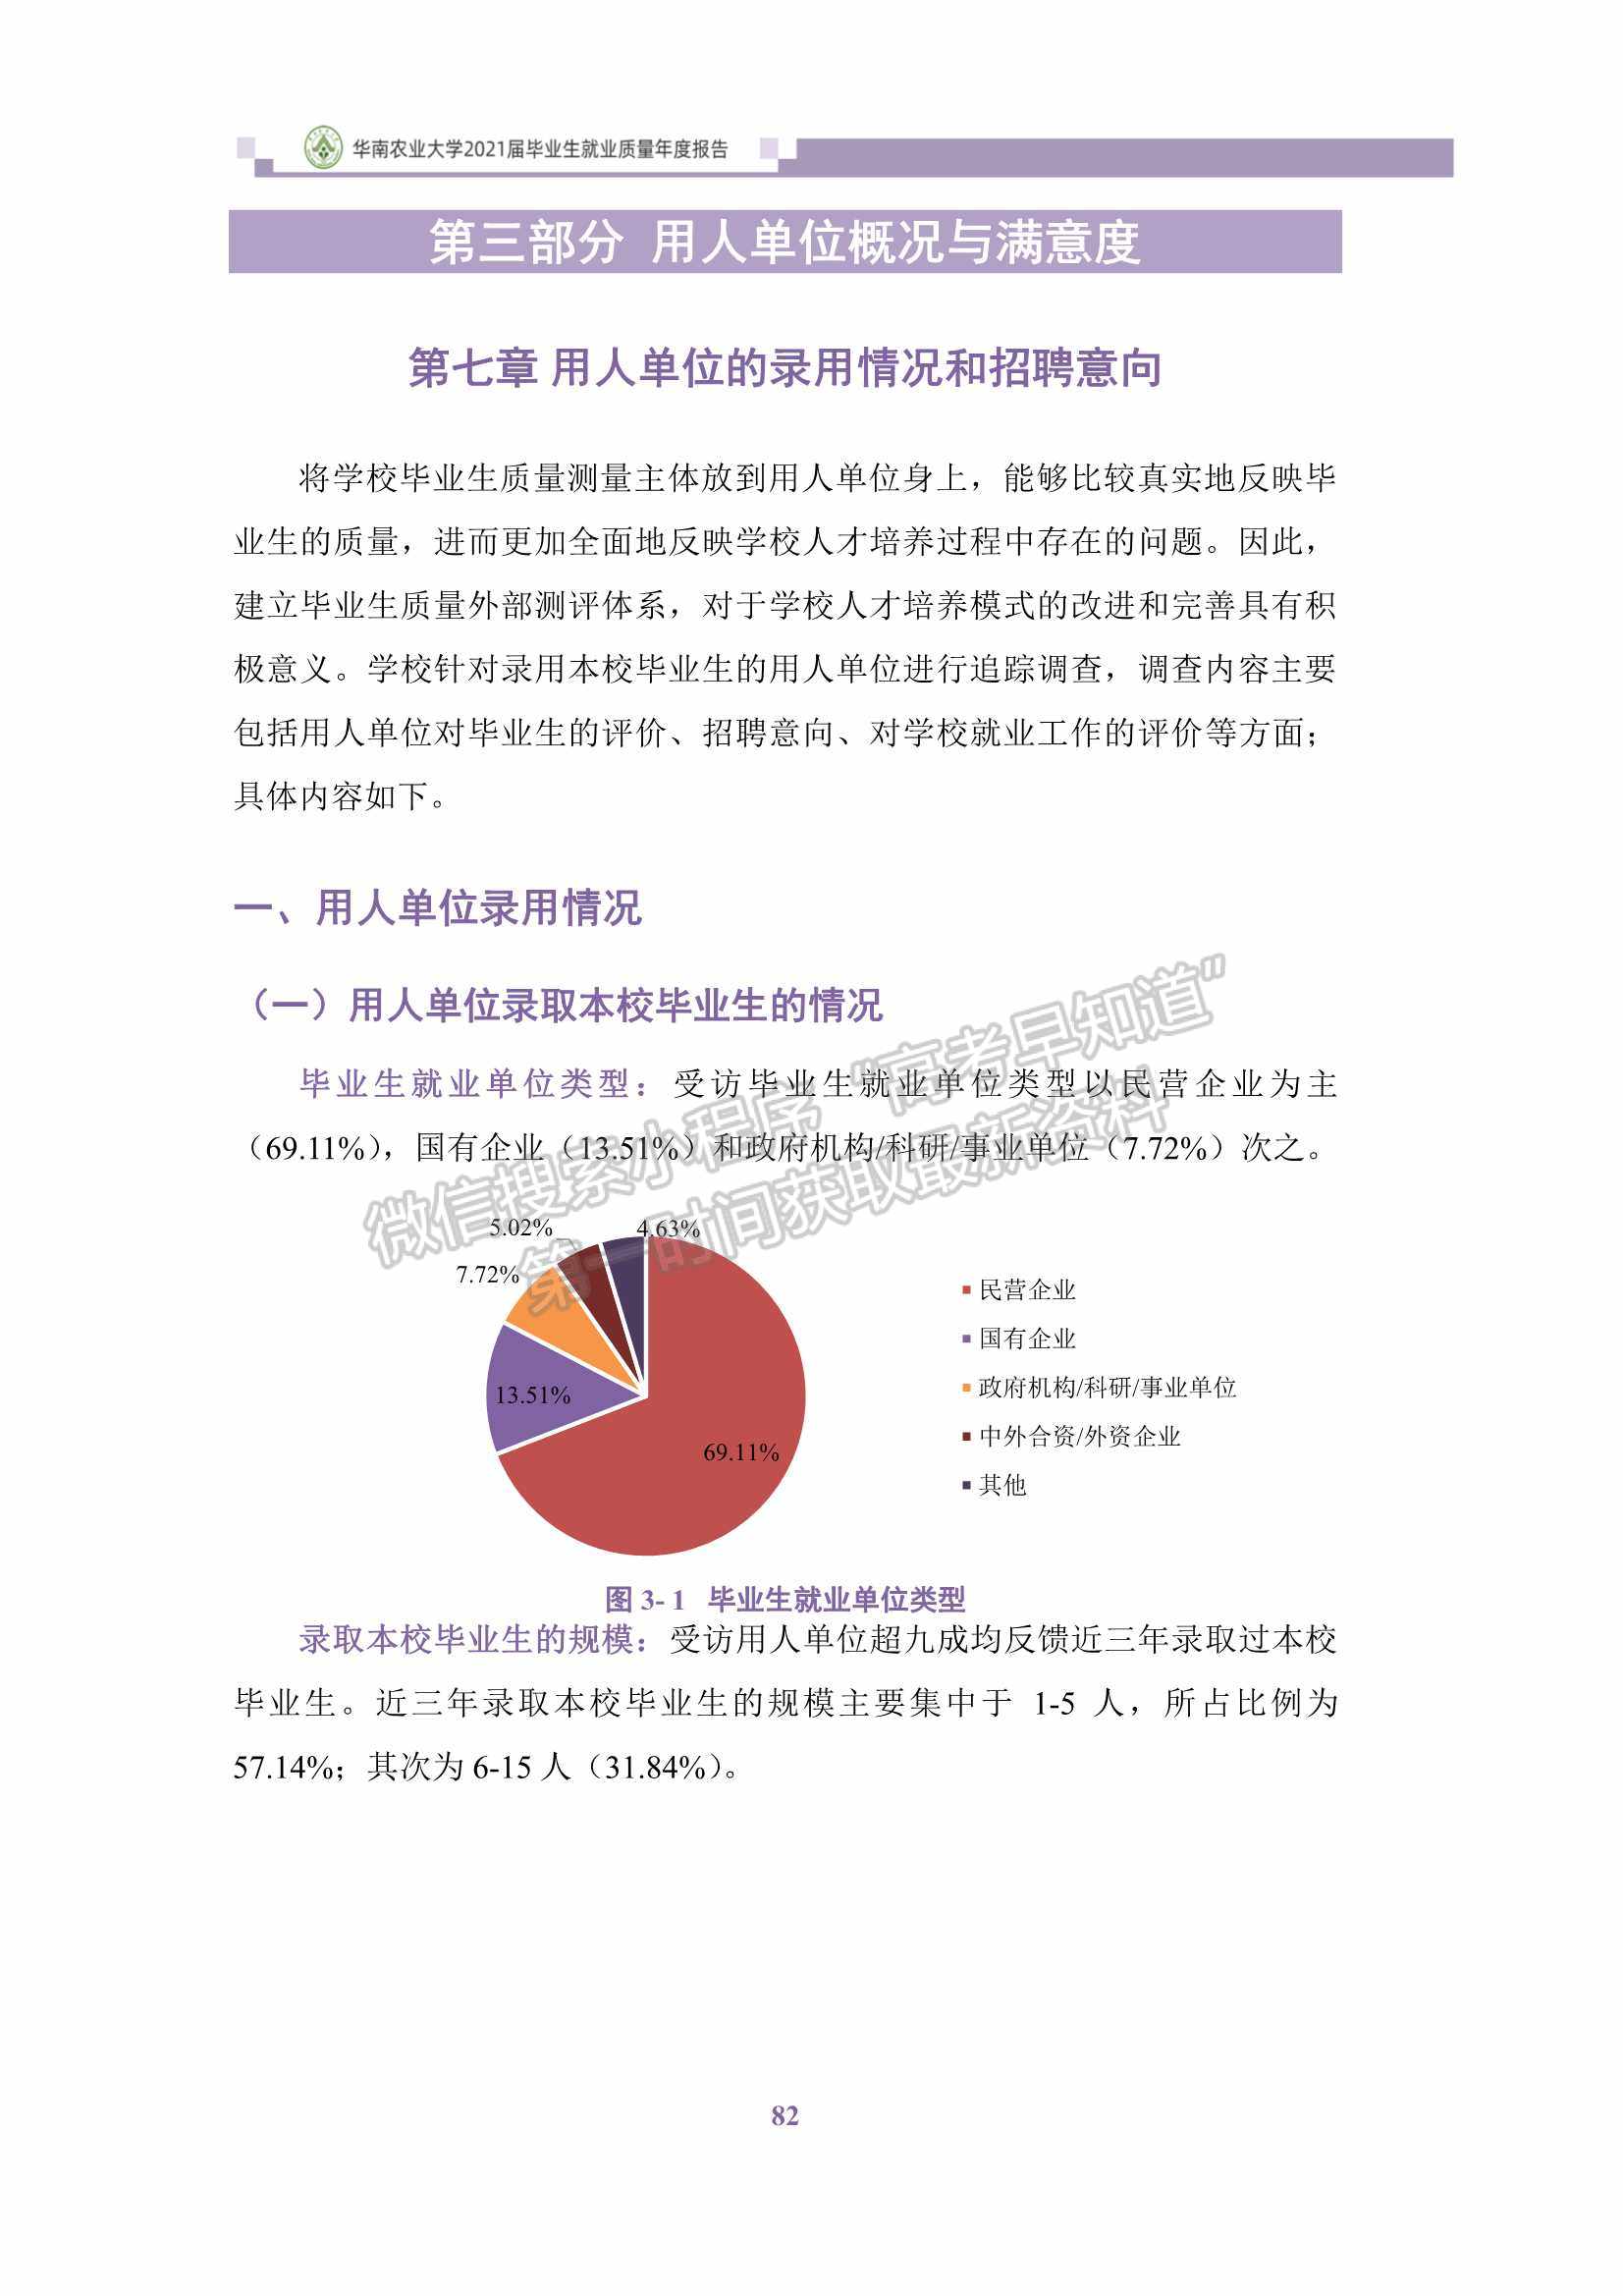 华南农业大学2021届毕业生就业质量年度报告